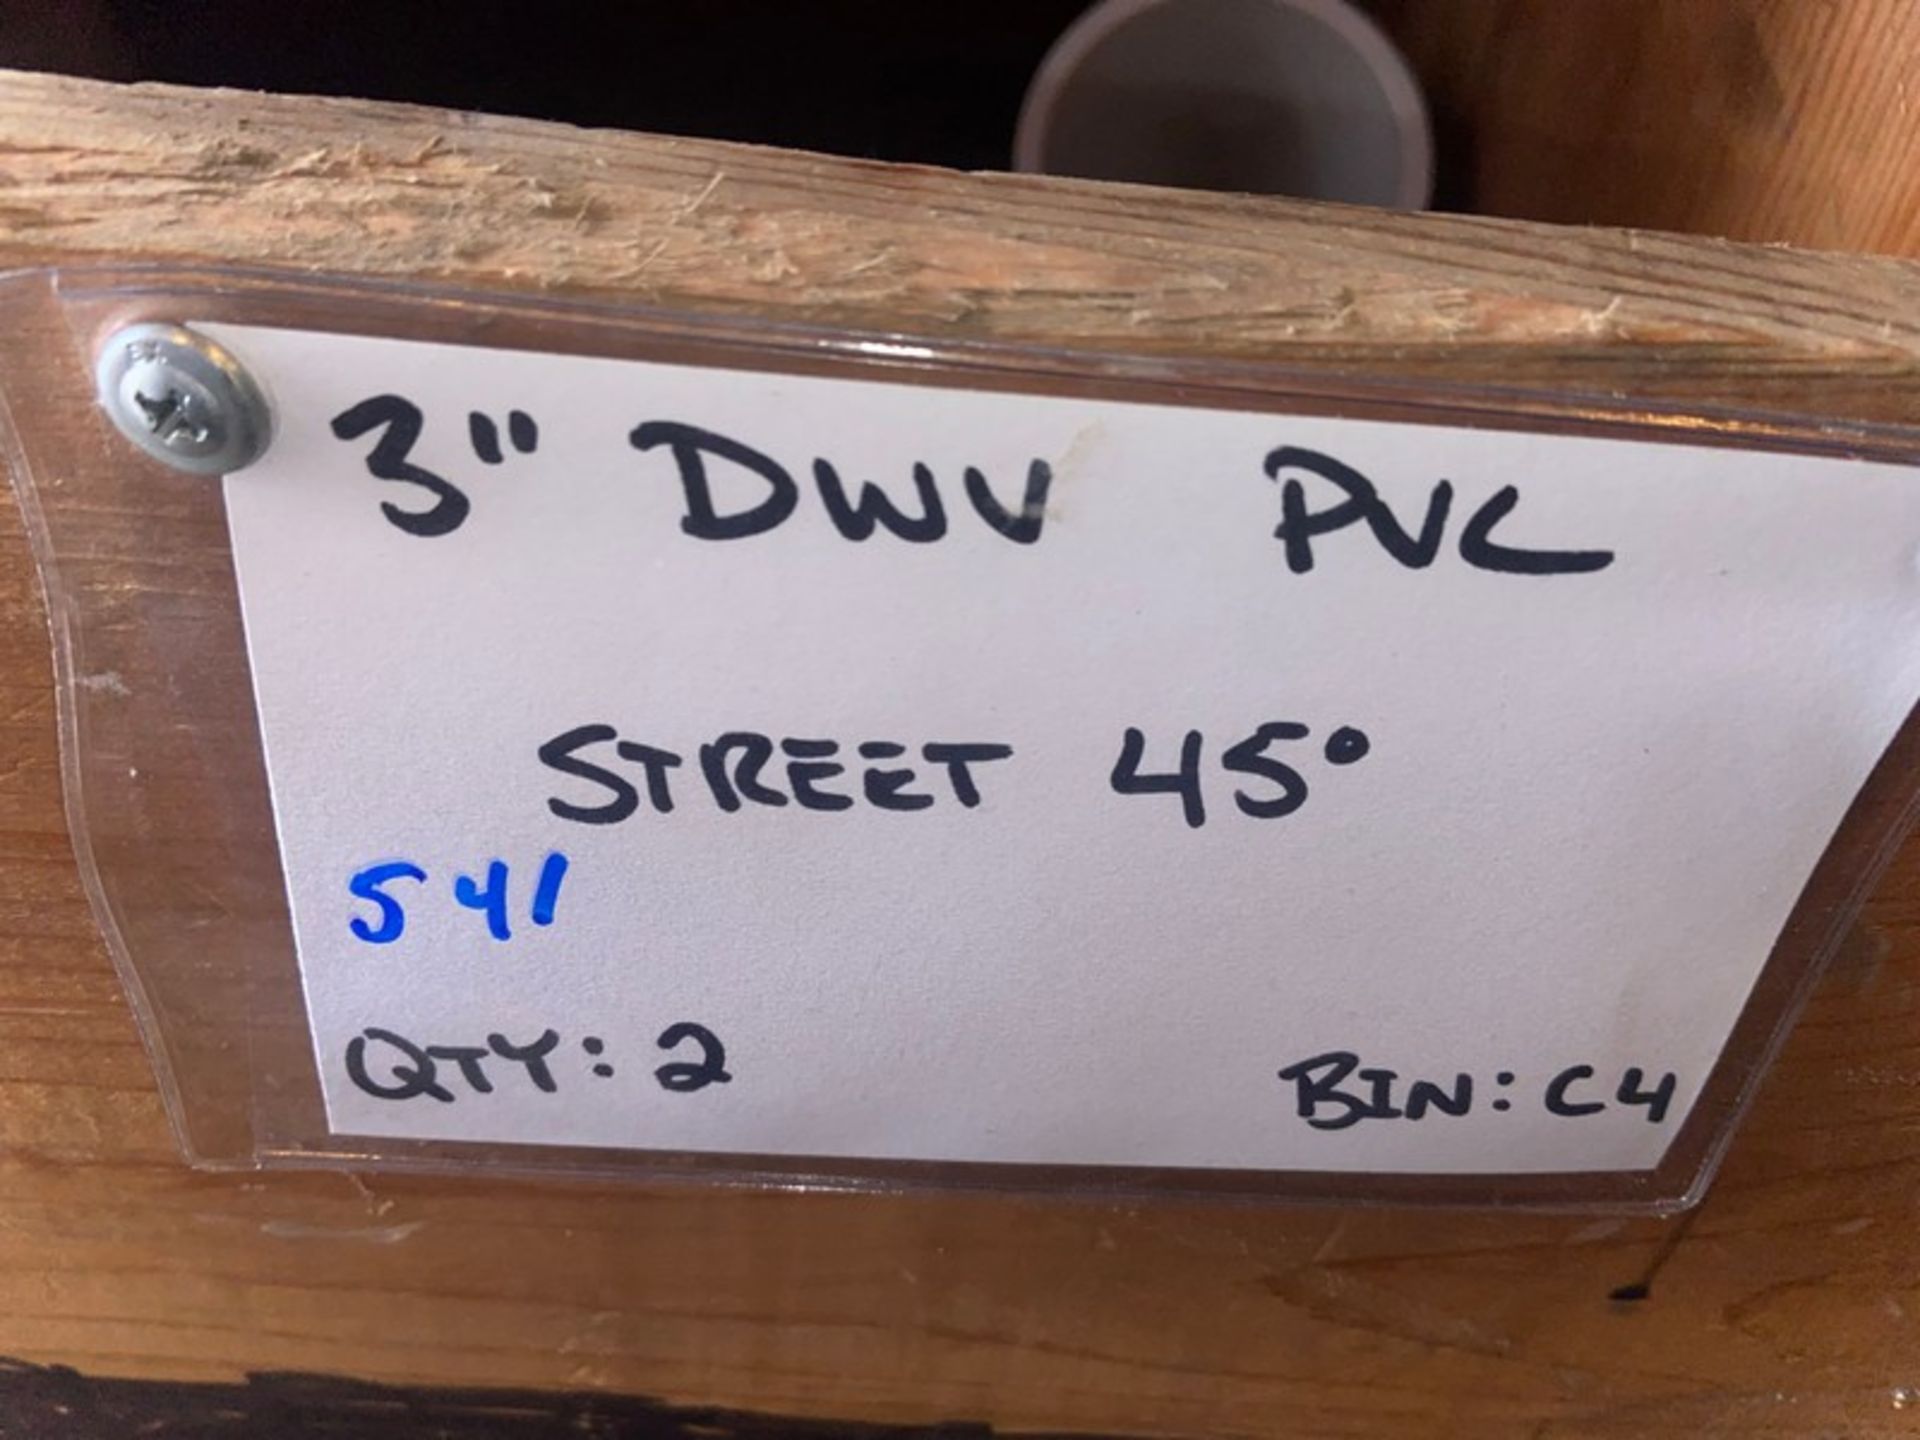 3” DWV PVC Double WYE (Bin:C4); (2) 3” DWV PVC STREET 45’ (Bin:C4) (LOCATED IN MONROEVILLE, PA) - Image 5 of 10